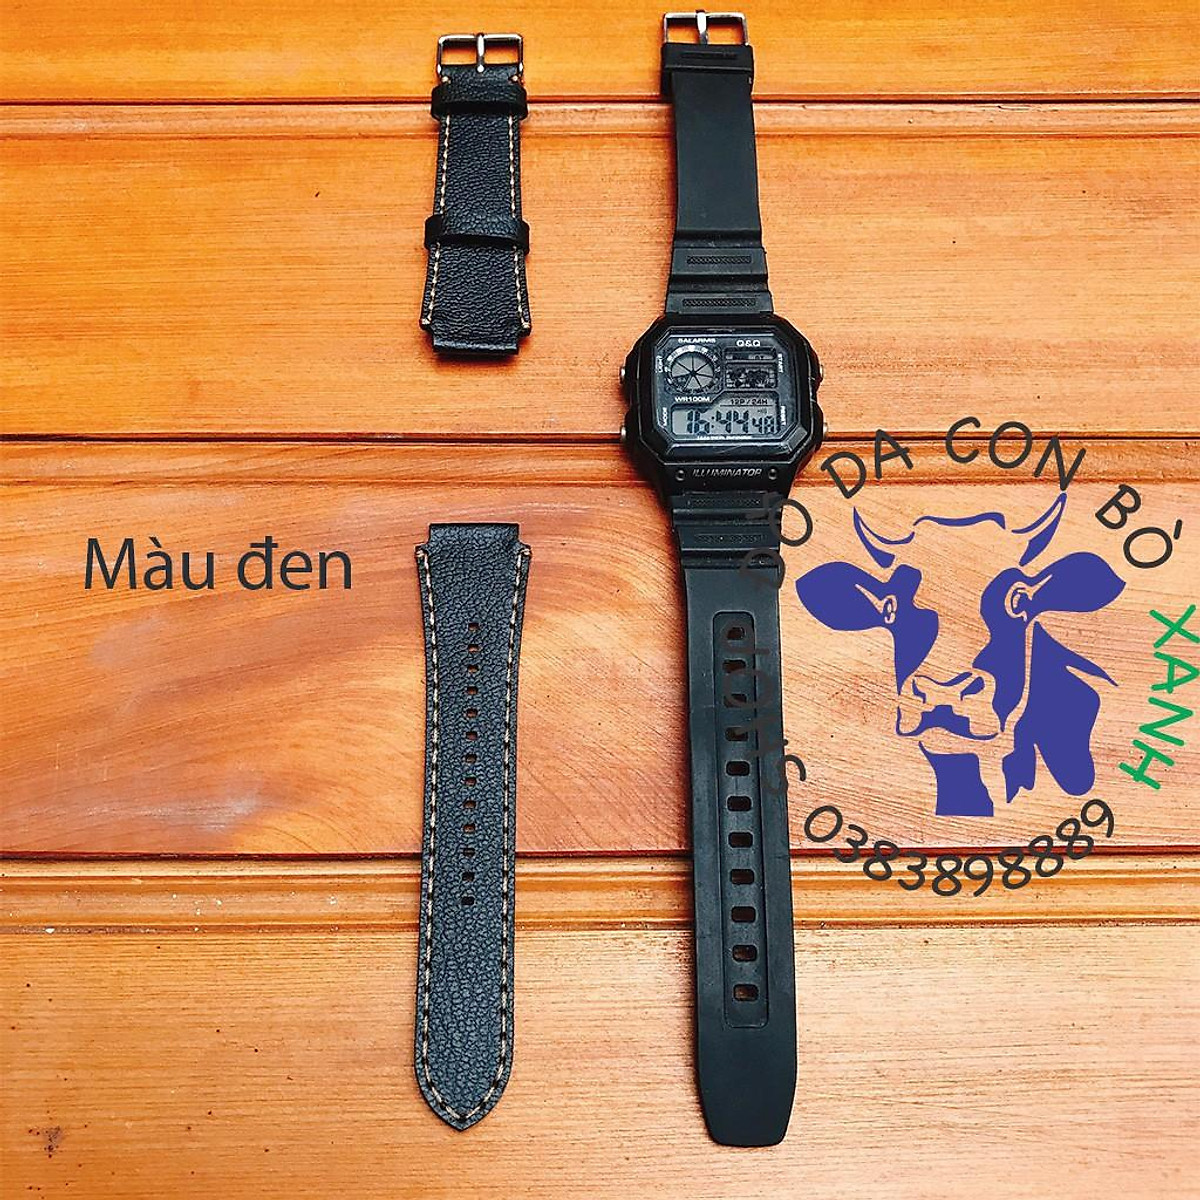 Mua Dây da dành cho đồng hồ Casio Ae1200 - seiko size 18mm Handmade - Đen  vân alran tại Shop đồ da con bò xanh